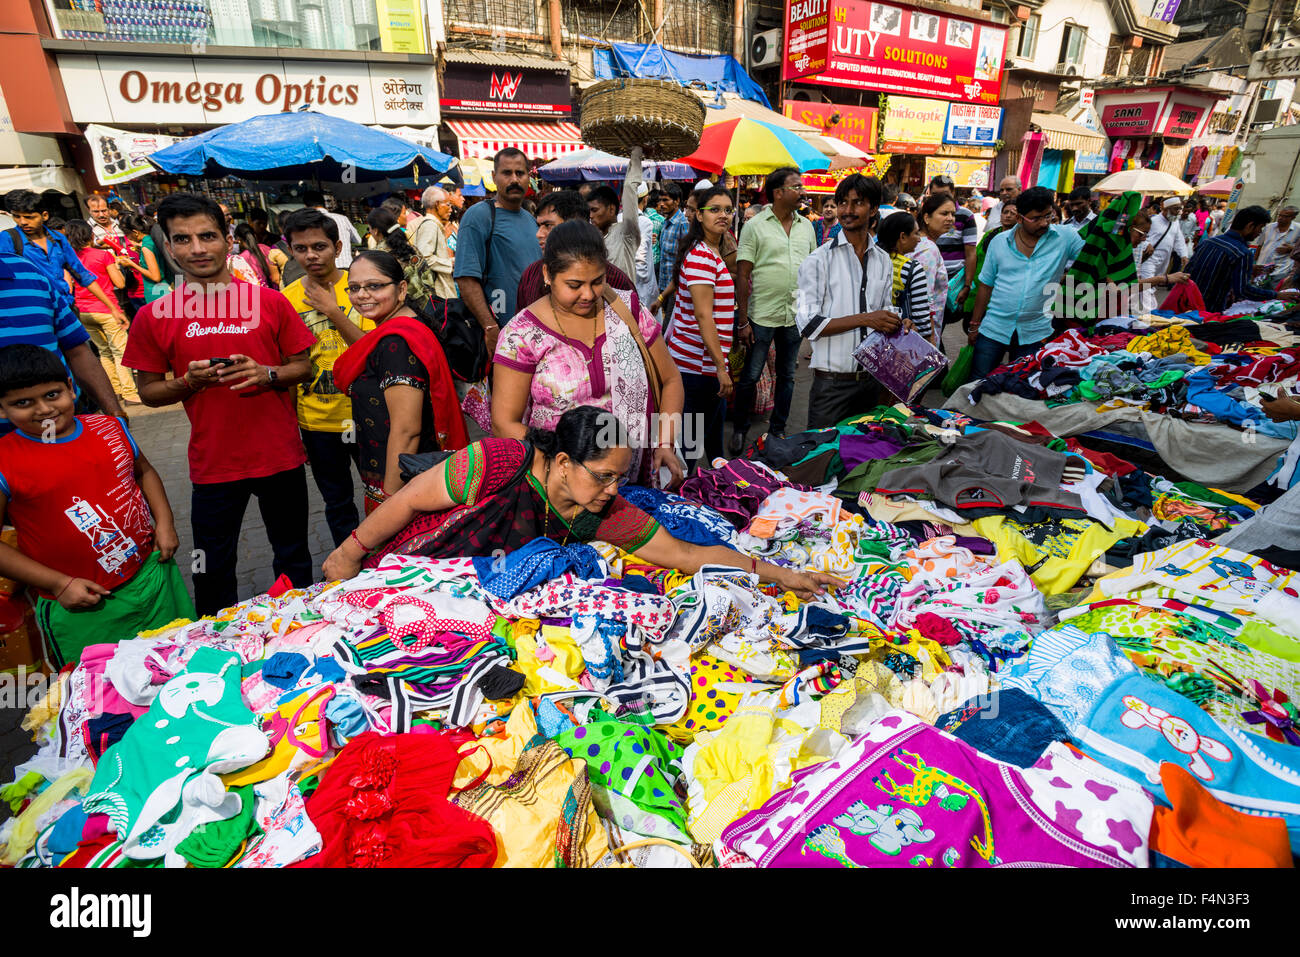 Vendeurs proposent des vêtements à vendre dans une rue bondée de boutiques au marché mangaldas Banque D'Images